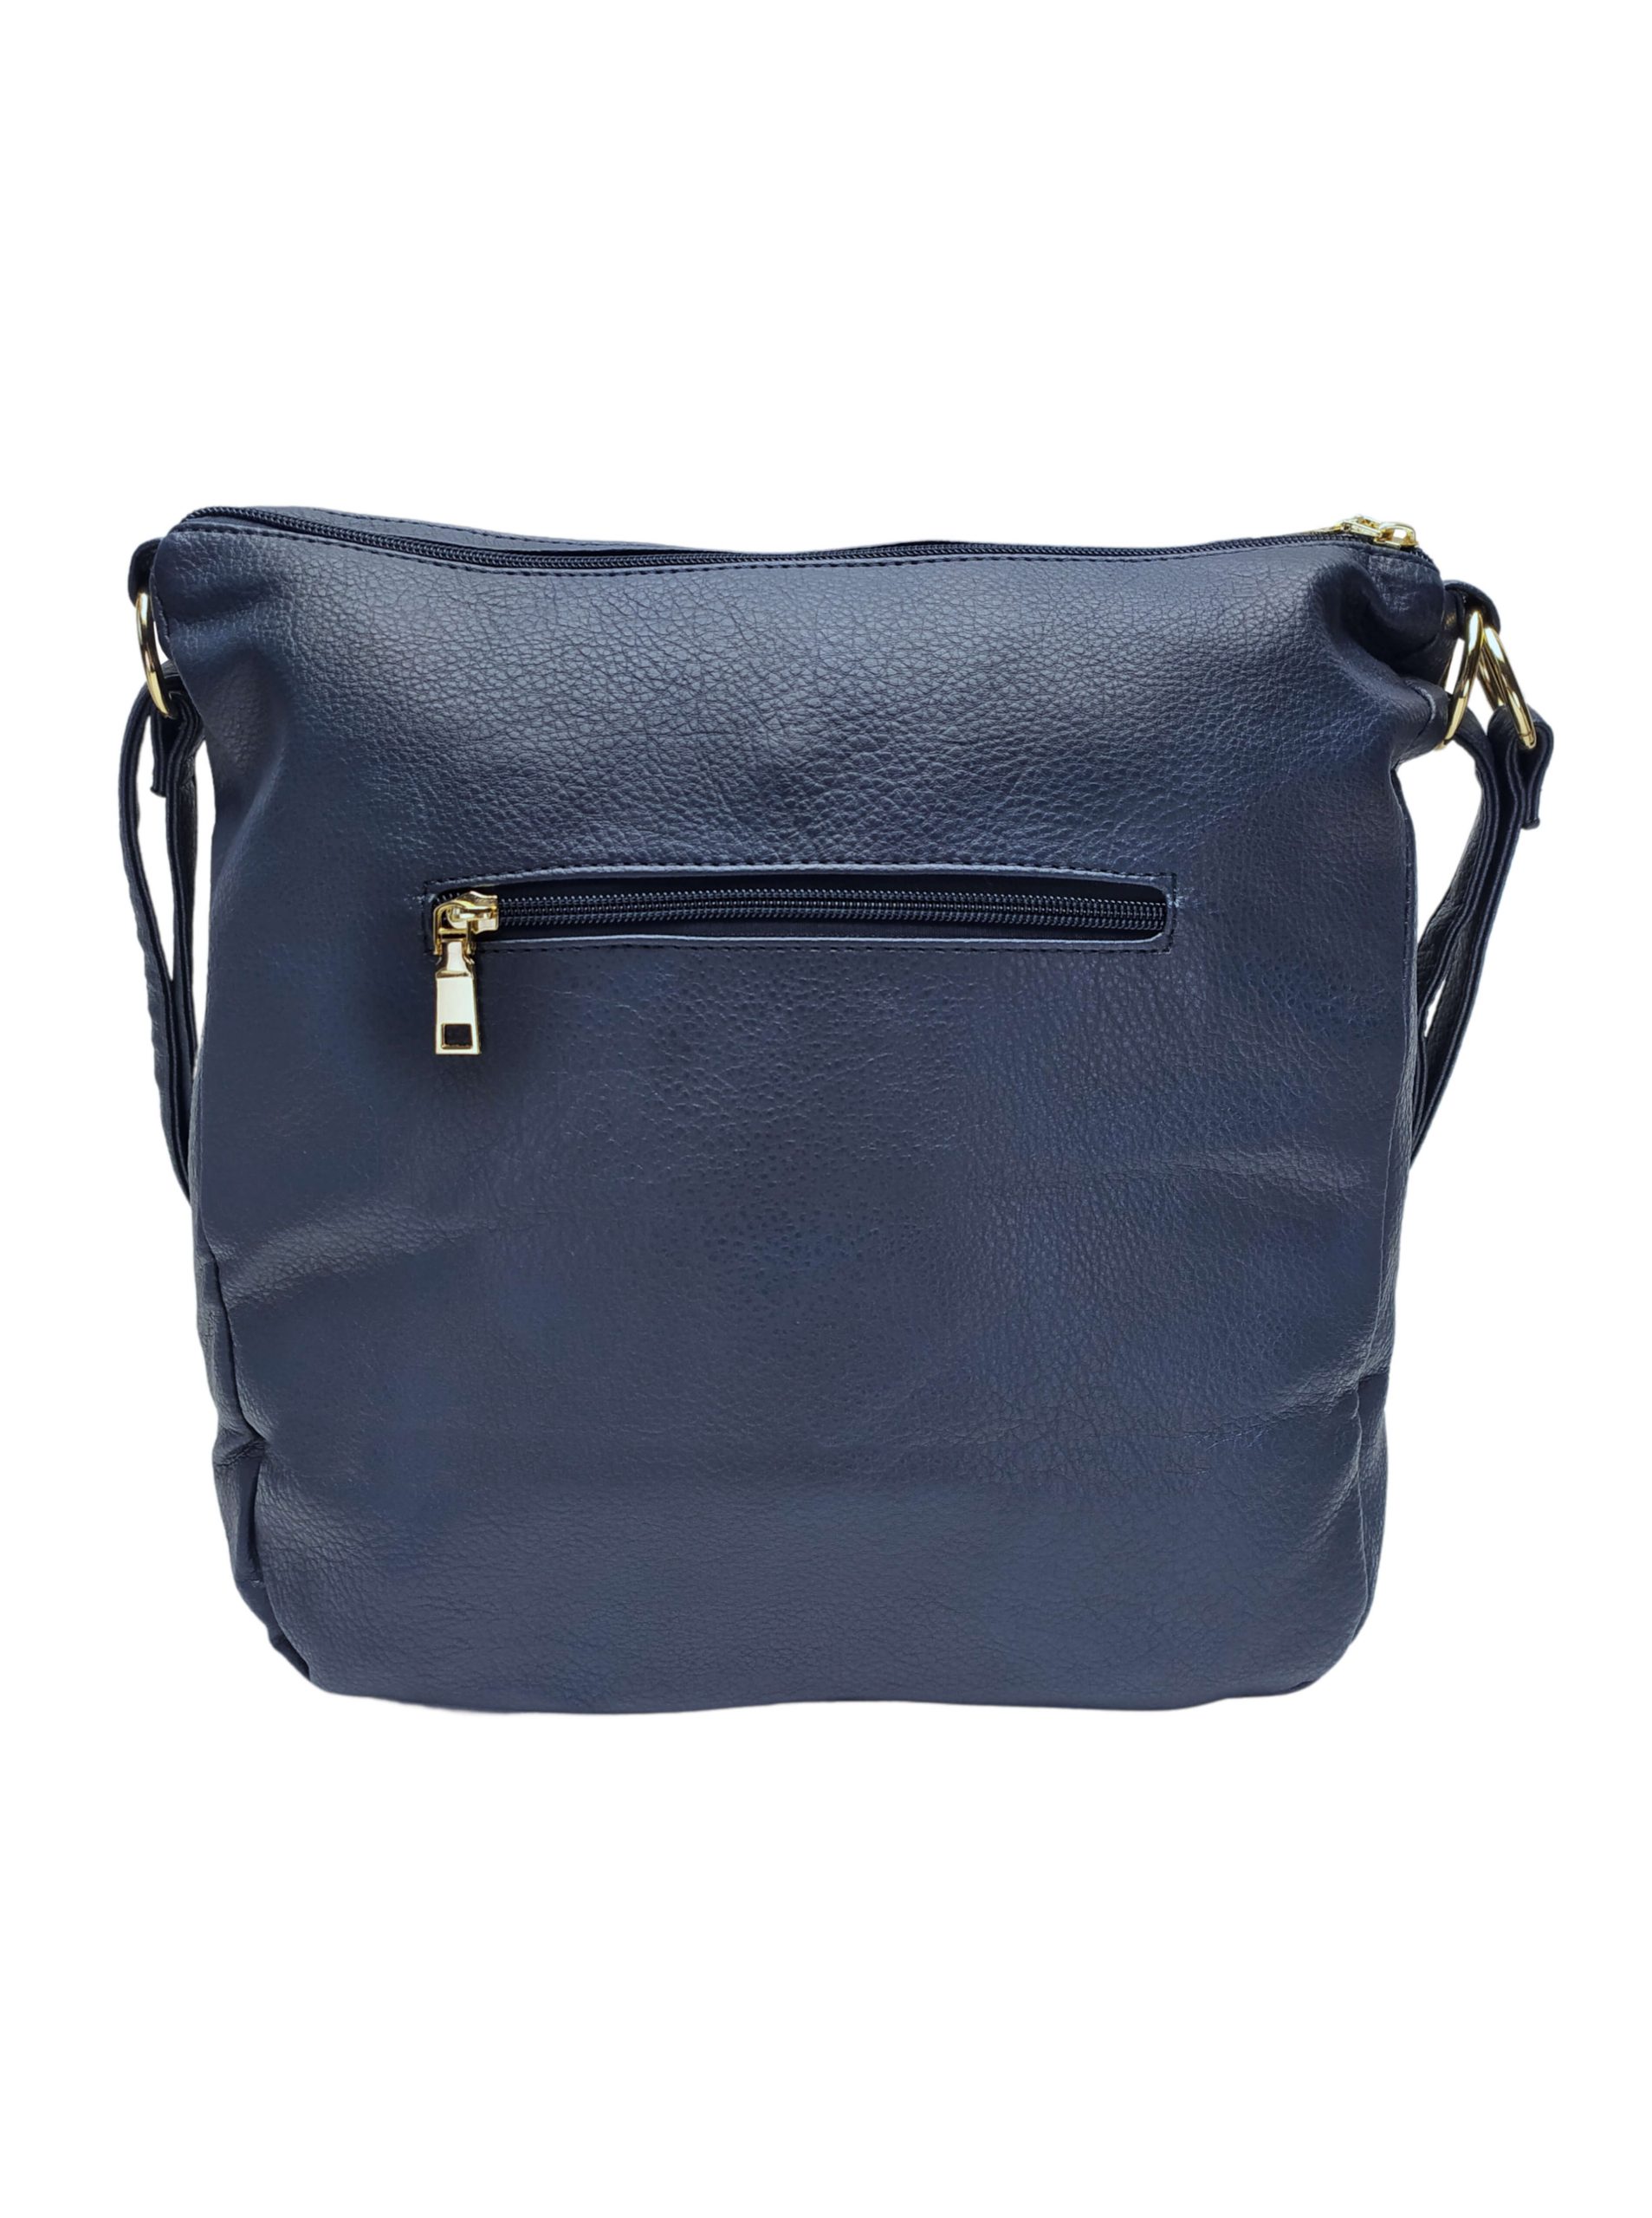 Velký tmavě modrý kabelko-batoh 2v1 s kapsou, Int. Company, H23, zadní strana kabelko-batohu